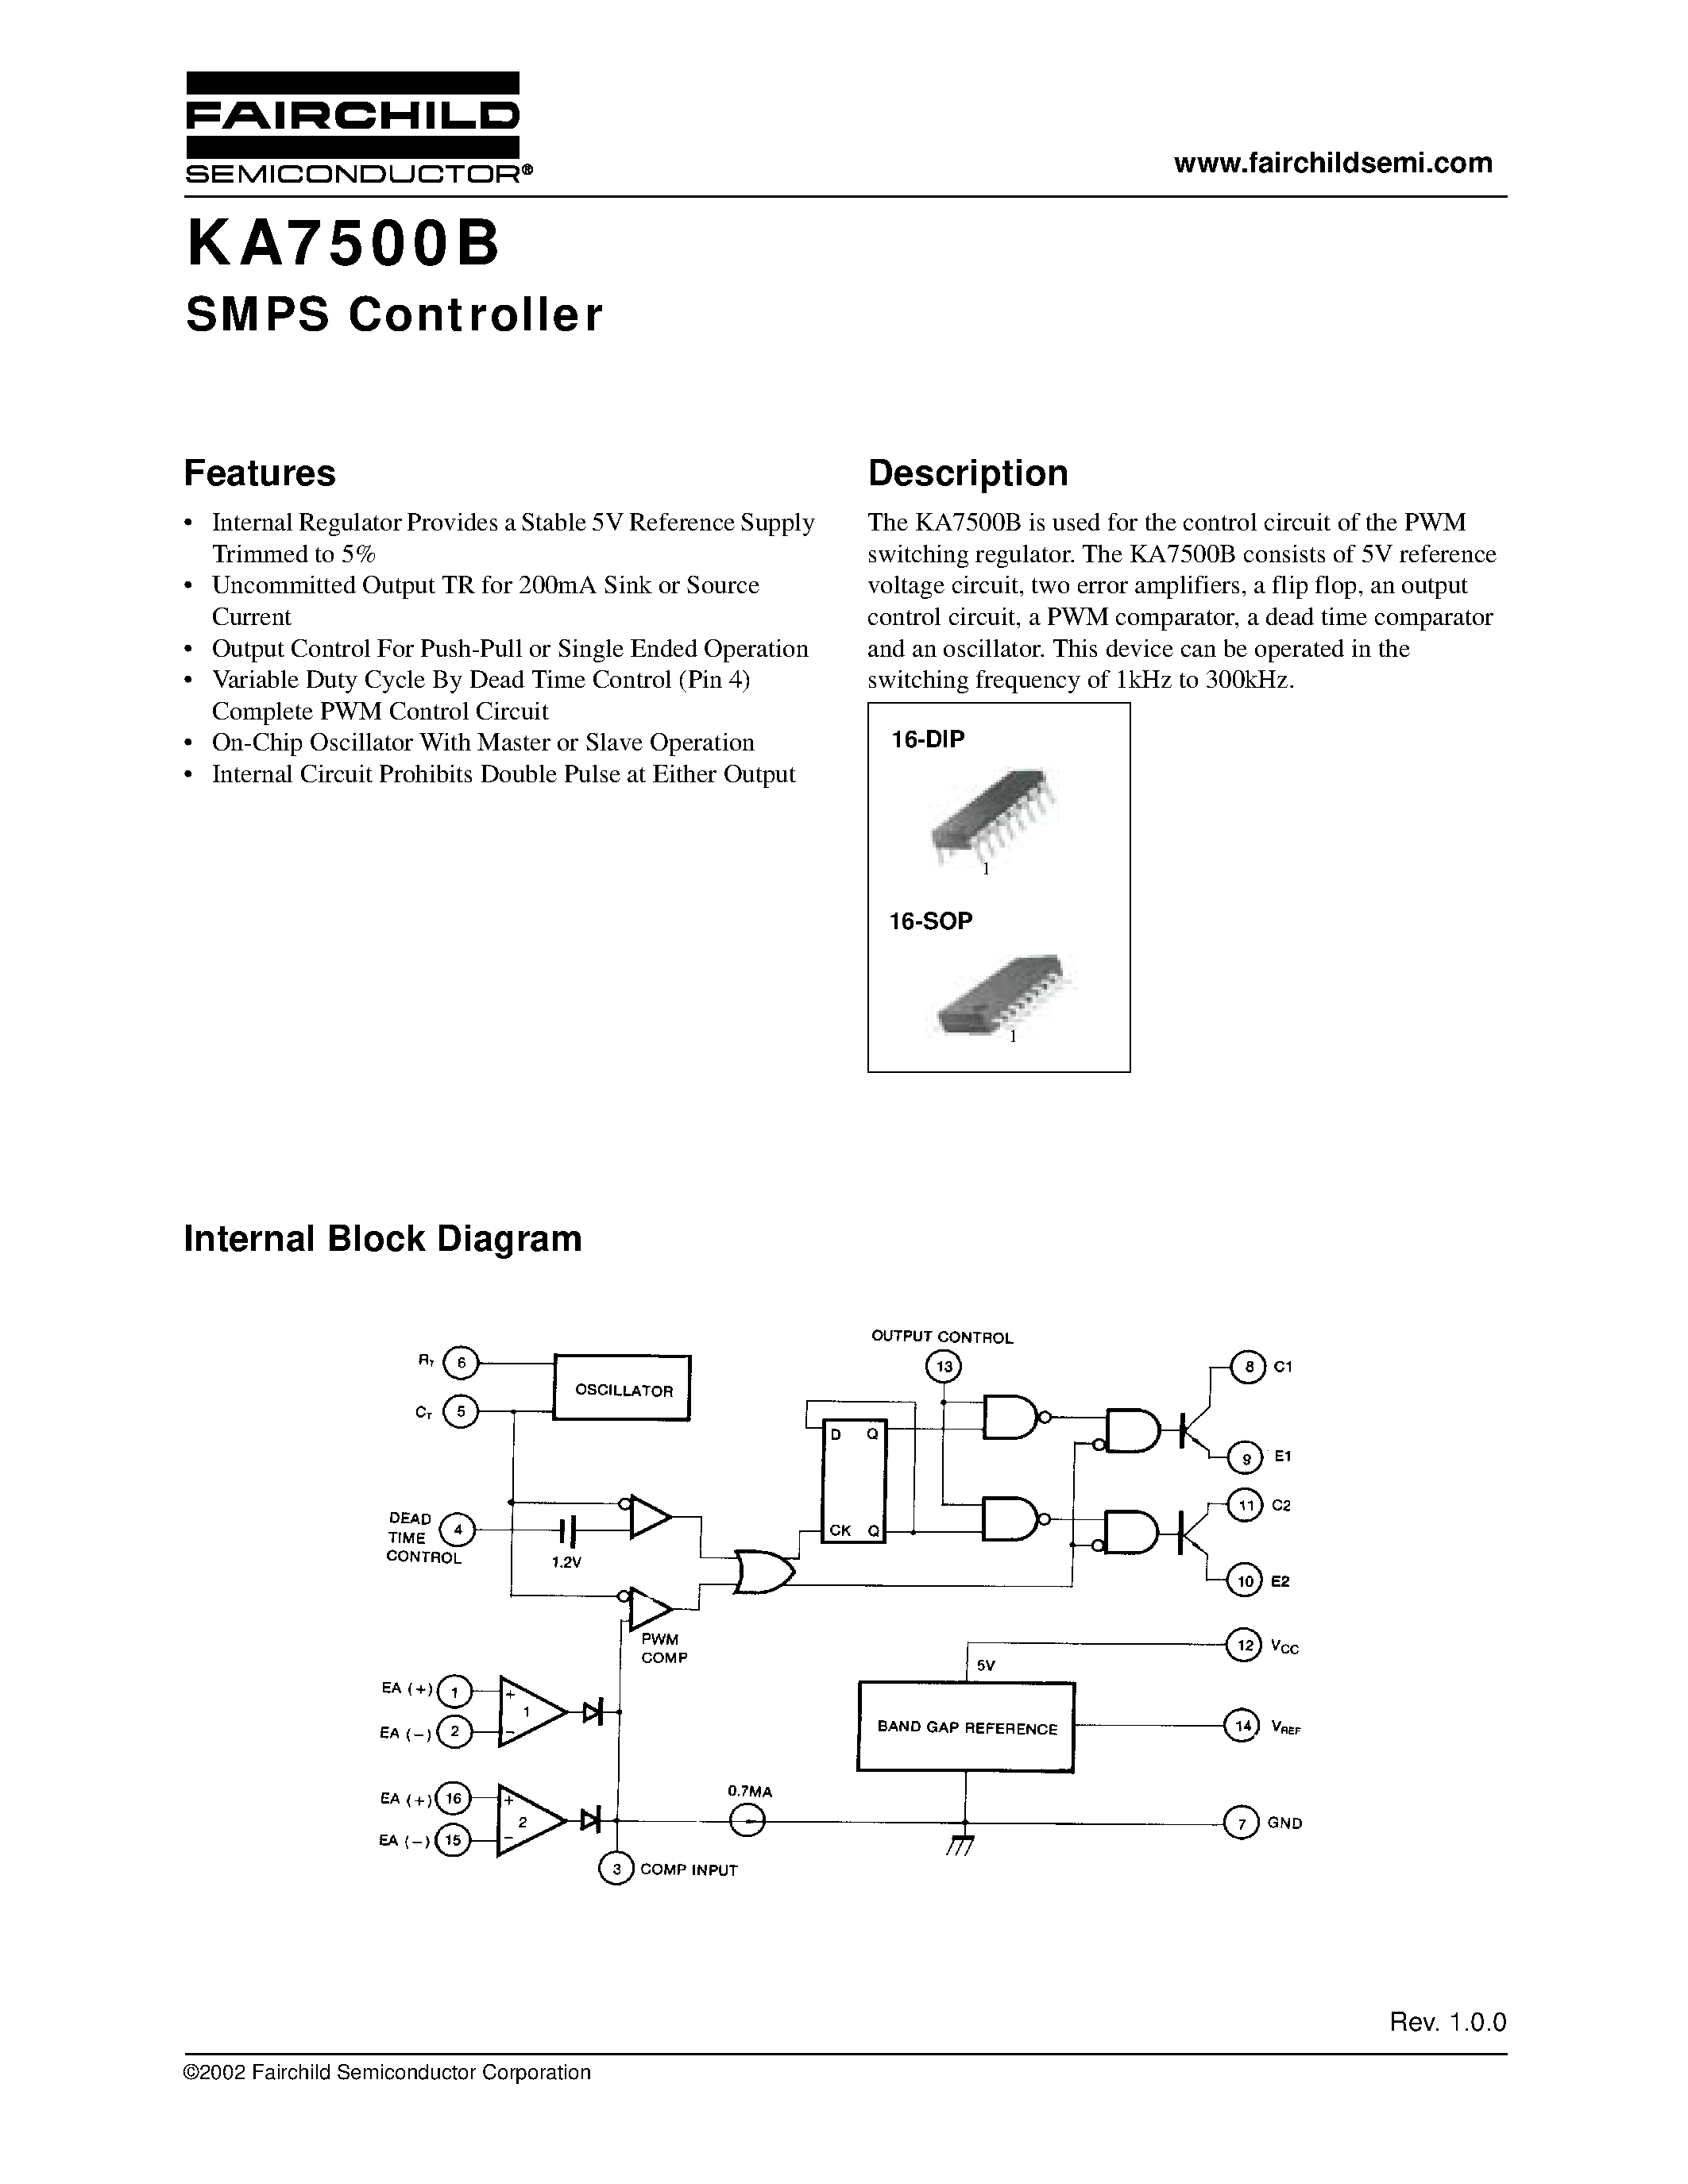 Datasheet KA7500B - SMPS Controller page 1